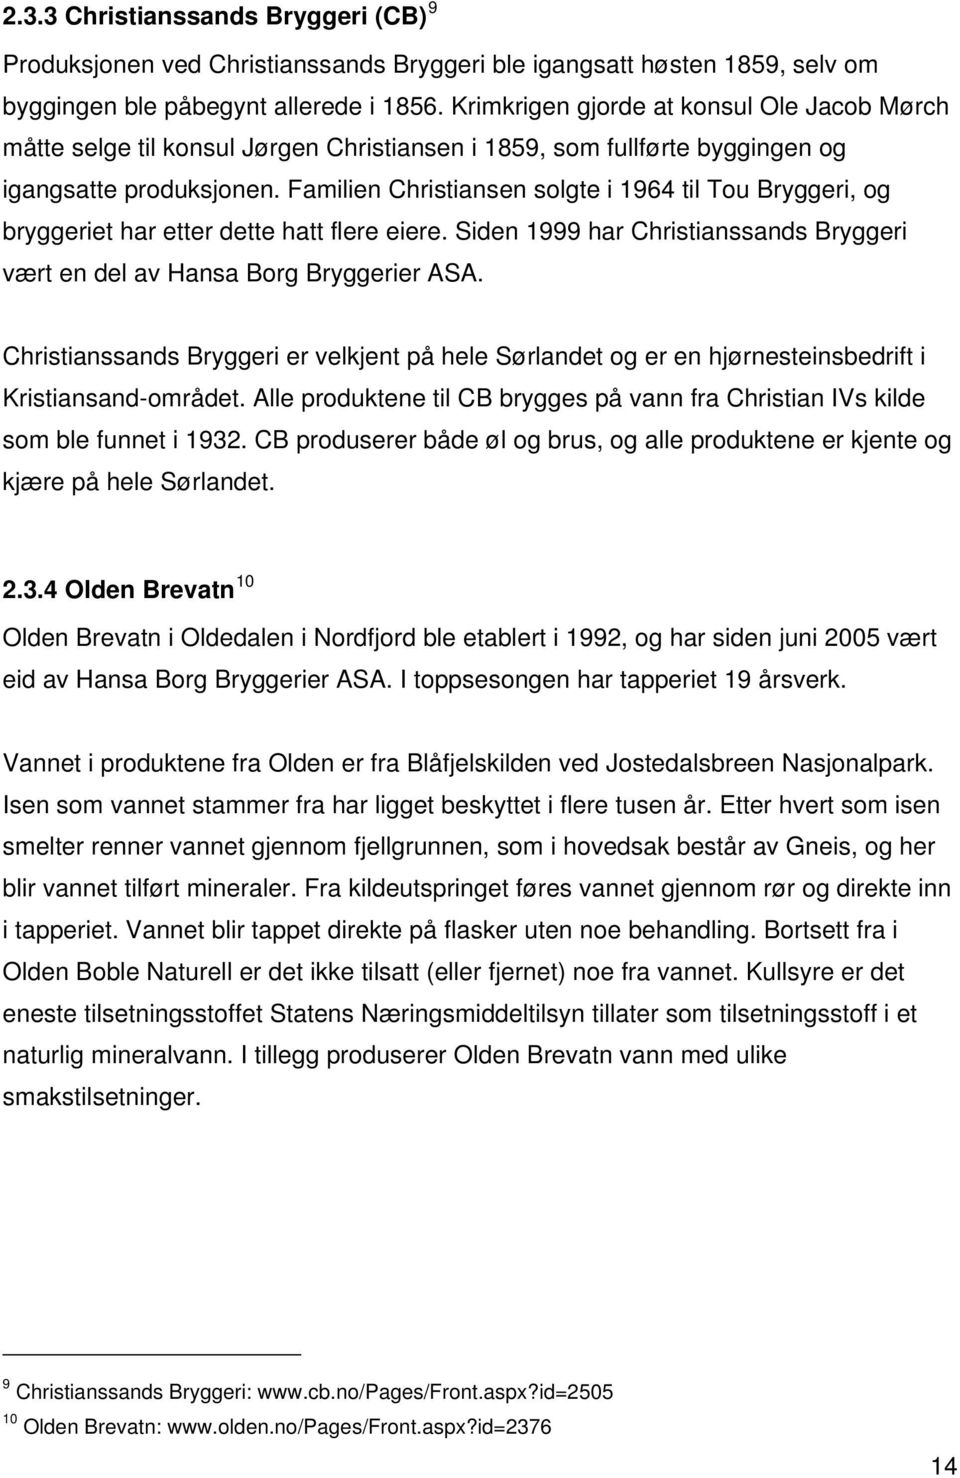 Familien Christiansen solgte i 1964 til Tou Bryggeri, og bryggeriet har etter dette hatt flere eiere. Siden 1999 har Christianssands Bryggeri vært en del av Hansa Borg Bryggerier ASA.